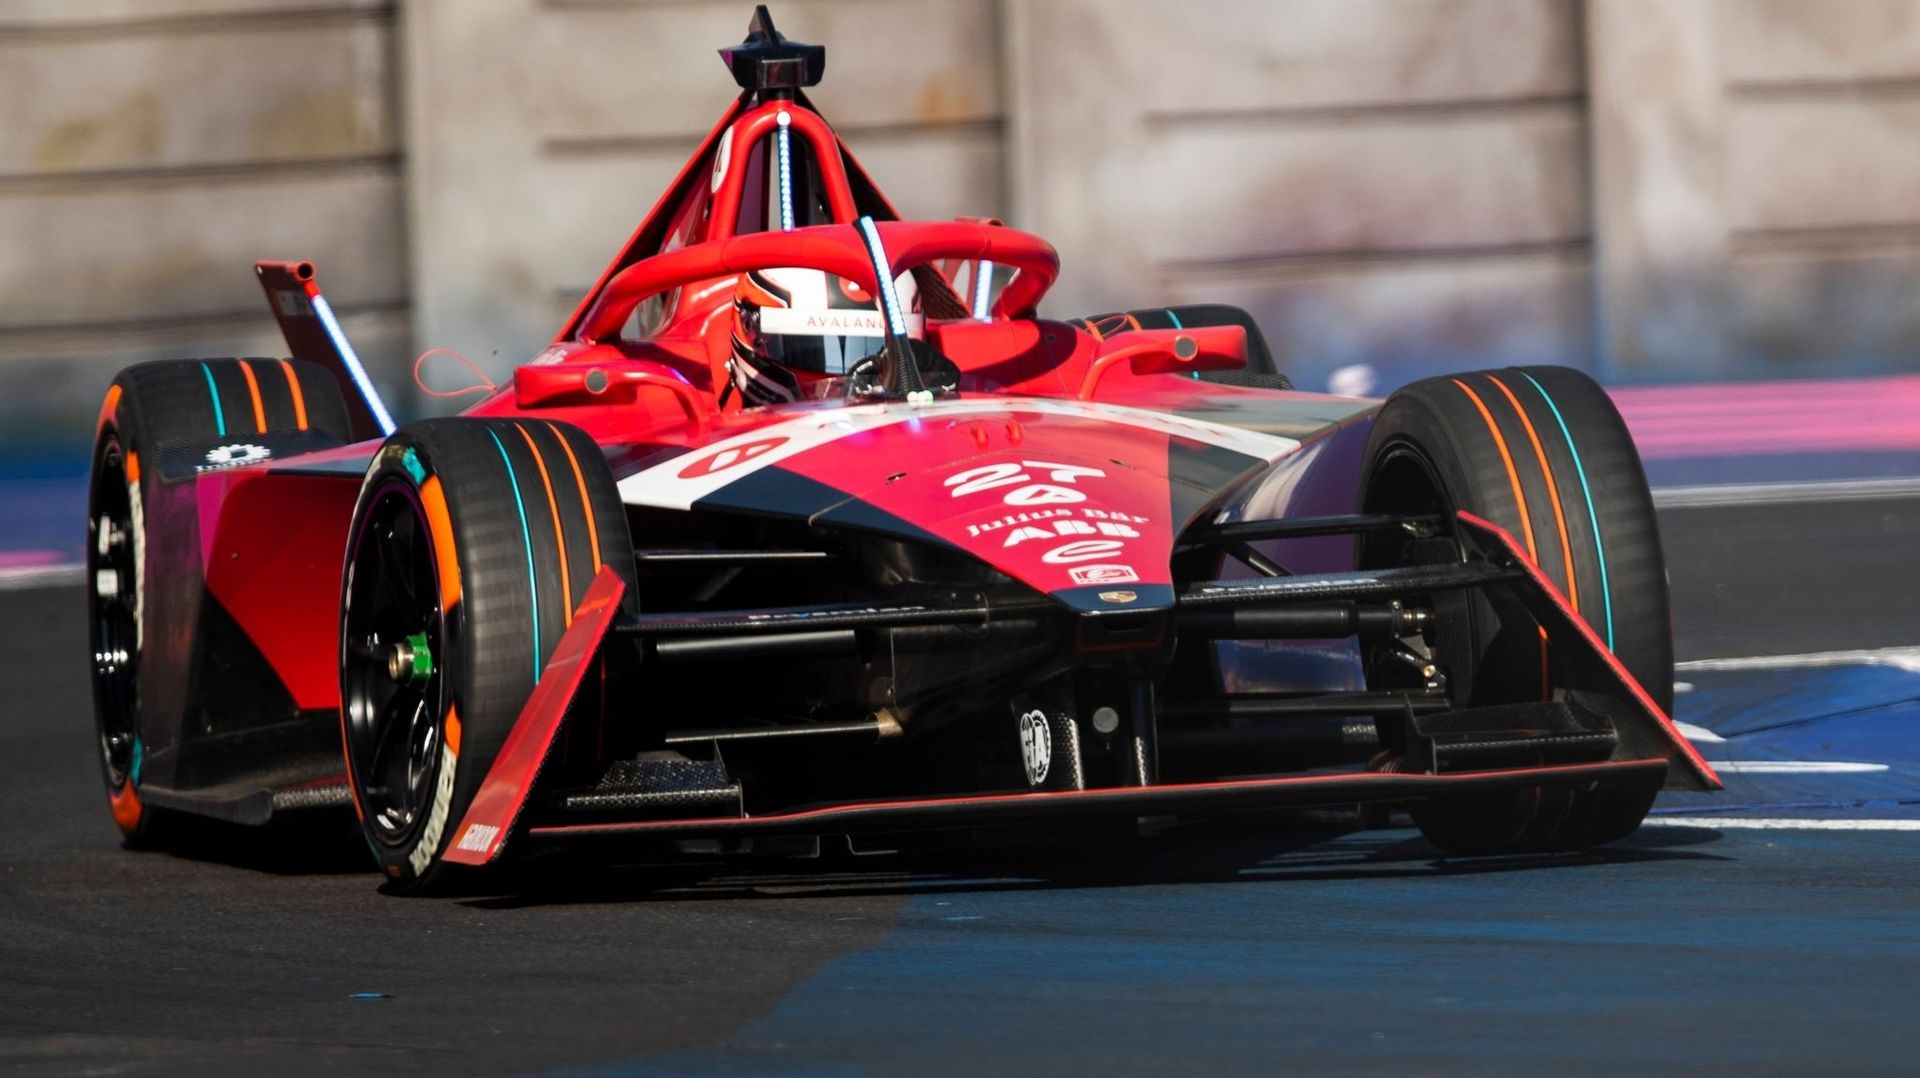 Fórmula E: Vandoorne 10º en el 1º E-Prix de la temporada en México, victoria para Dennis